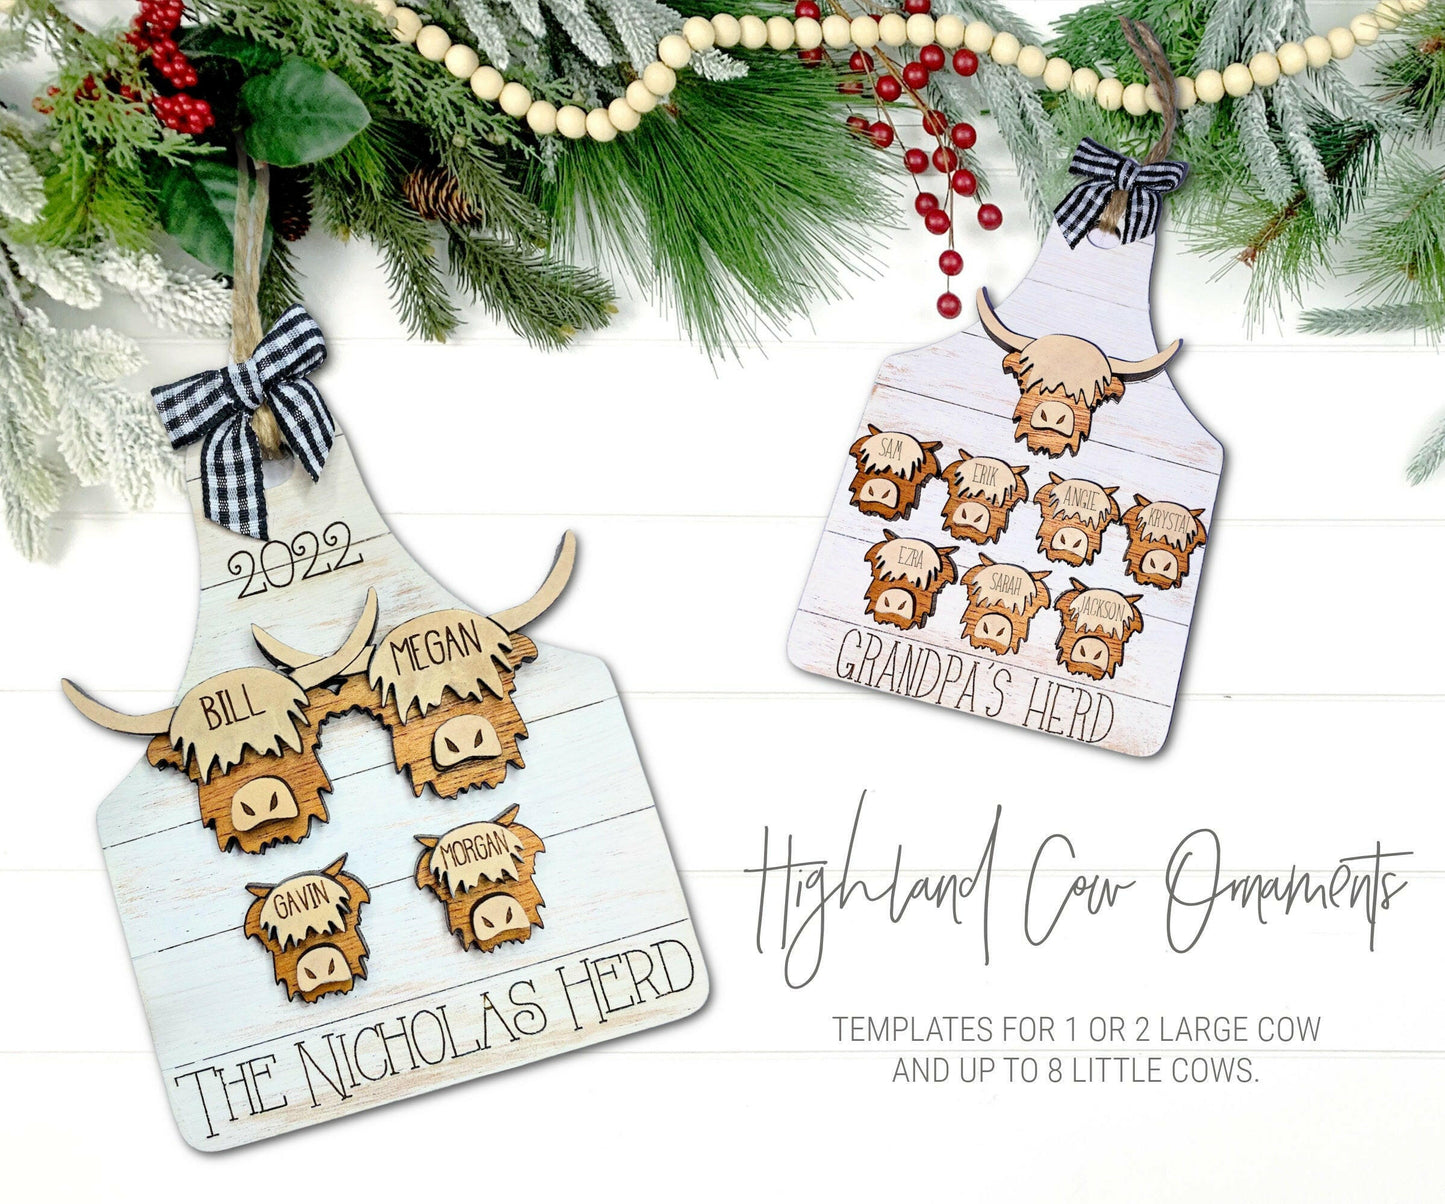 Highland Cow Family Ornament SVG, Farmhouse Ornament SVG, Grandparent Highland Cow Ornament, Christmas Highland Cow Ornaments, Cow Tag SVG